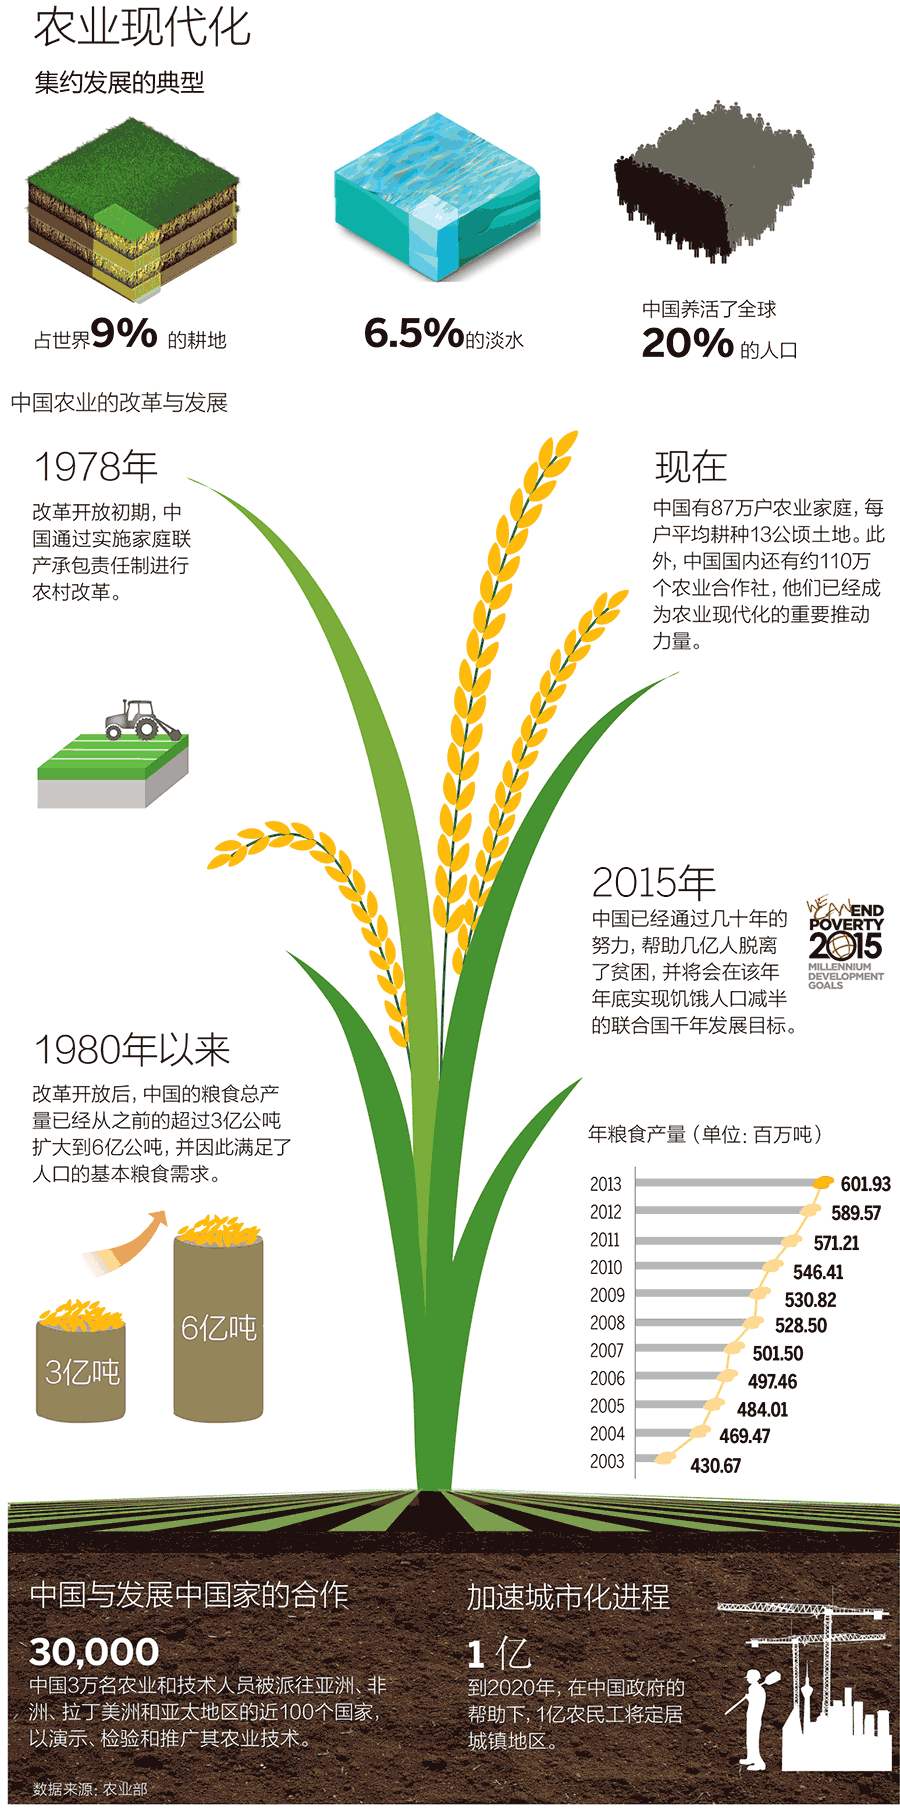 一张图看懂中国现代农业的改革与发展